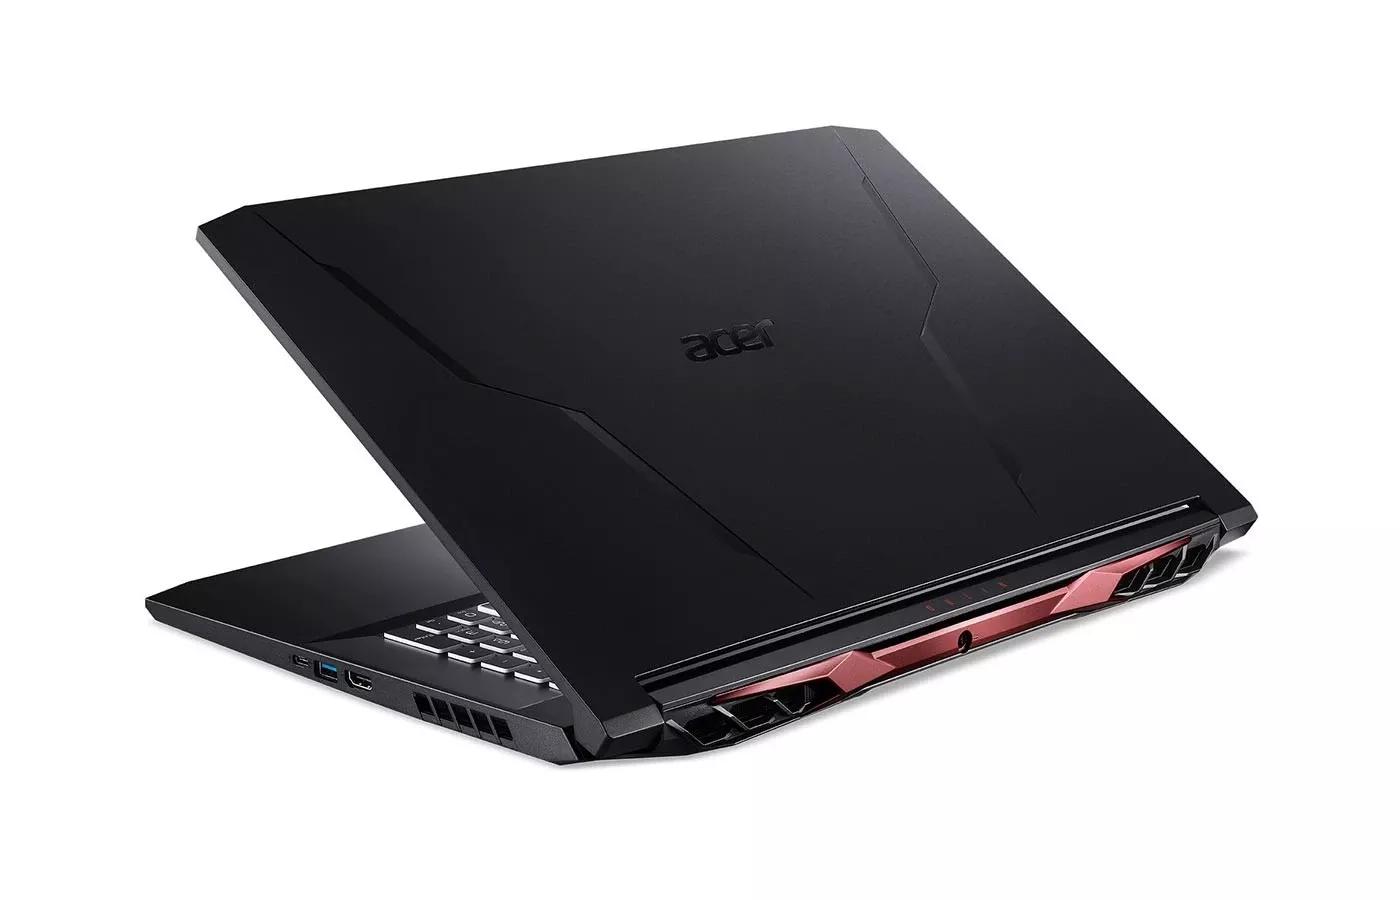 Acer Nitro 5 2021 AMD Ryzen 5 5600H / GTX 1650 / 8GB RAM / 256GB SSD / 1TB HDD / 15.6" FHD 144Hz display